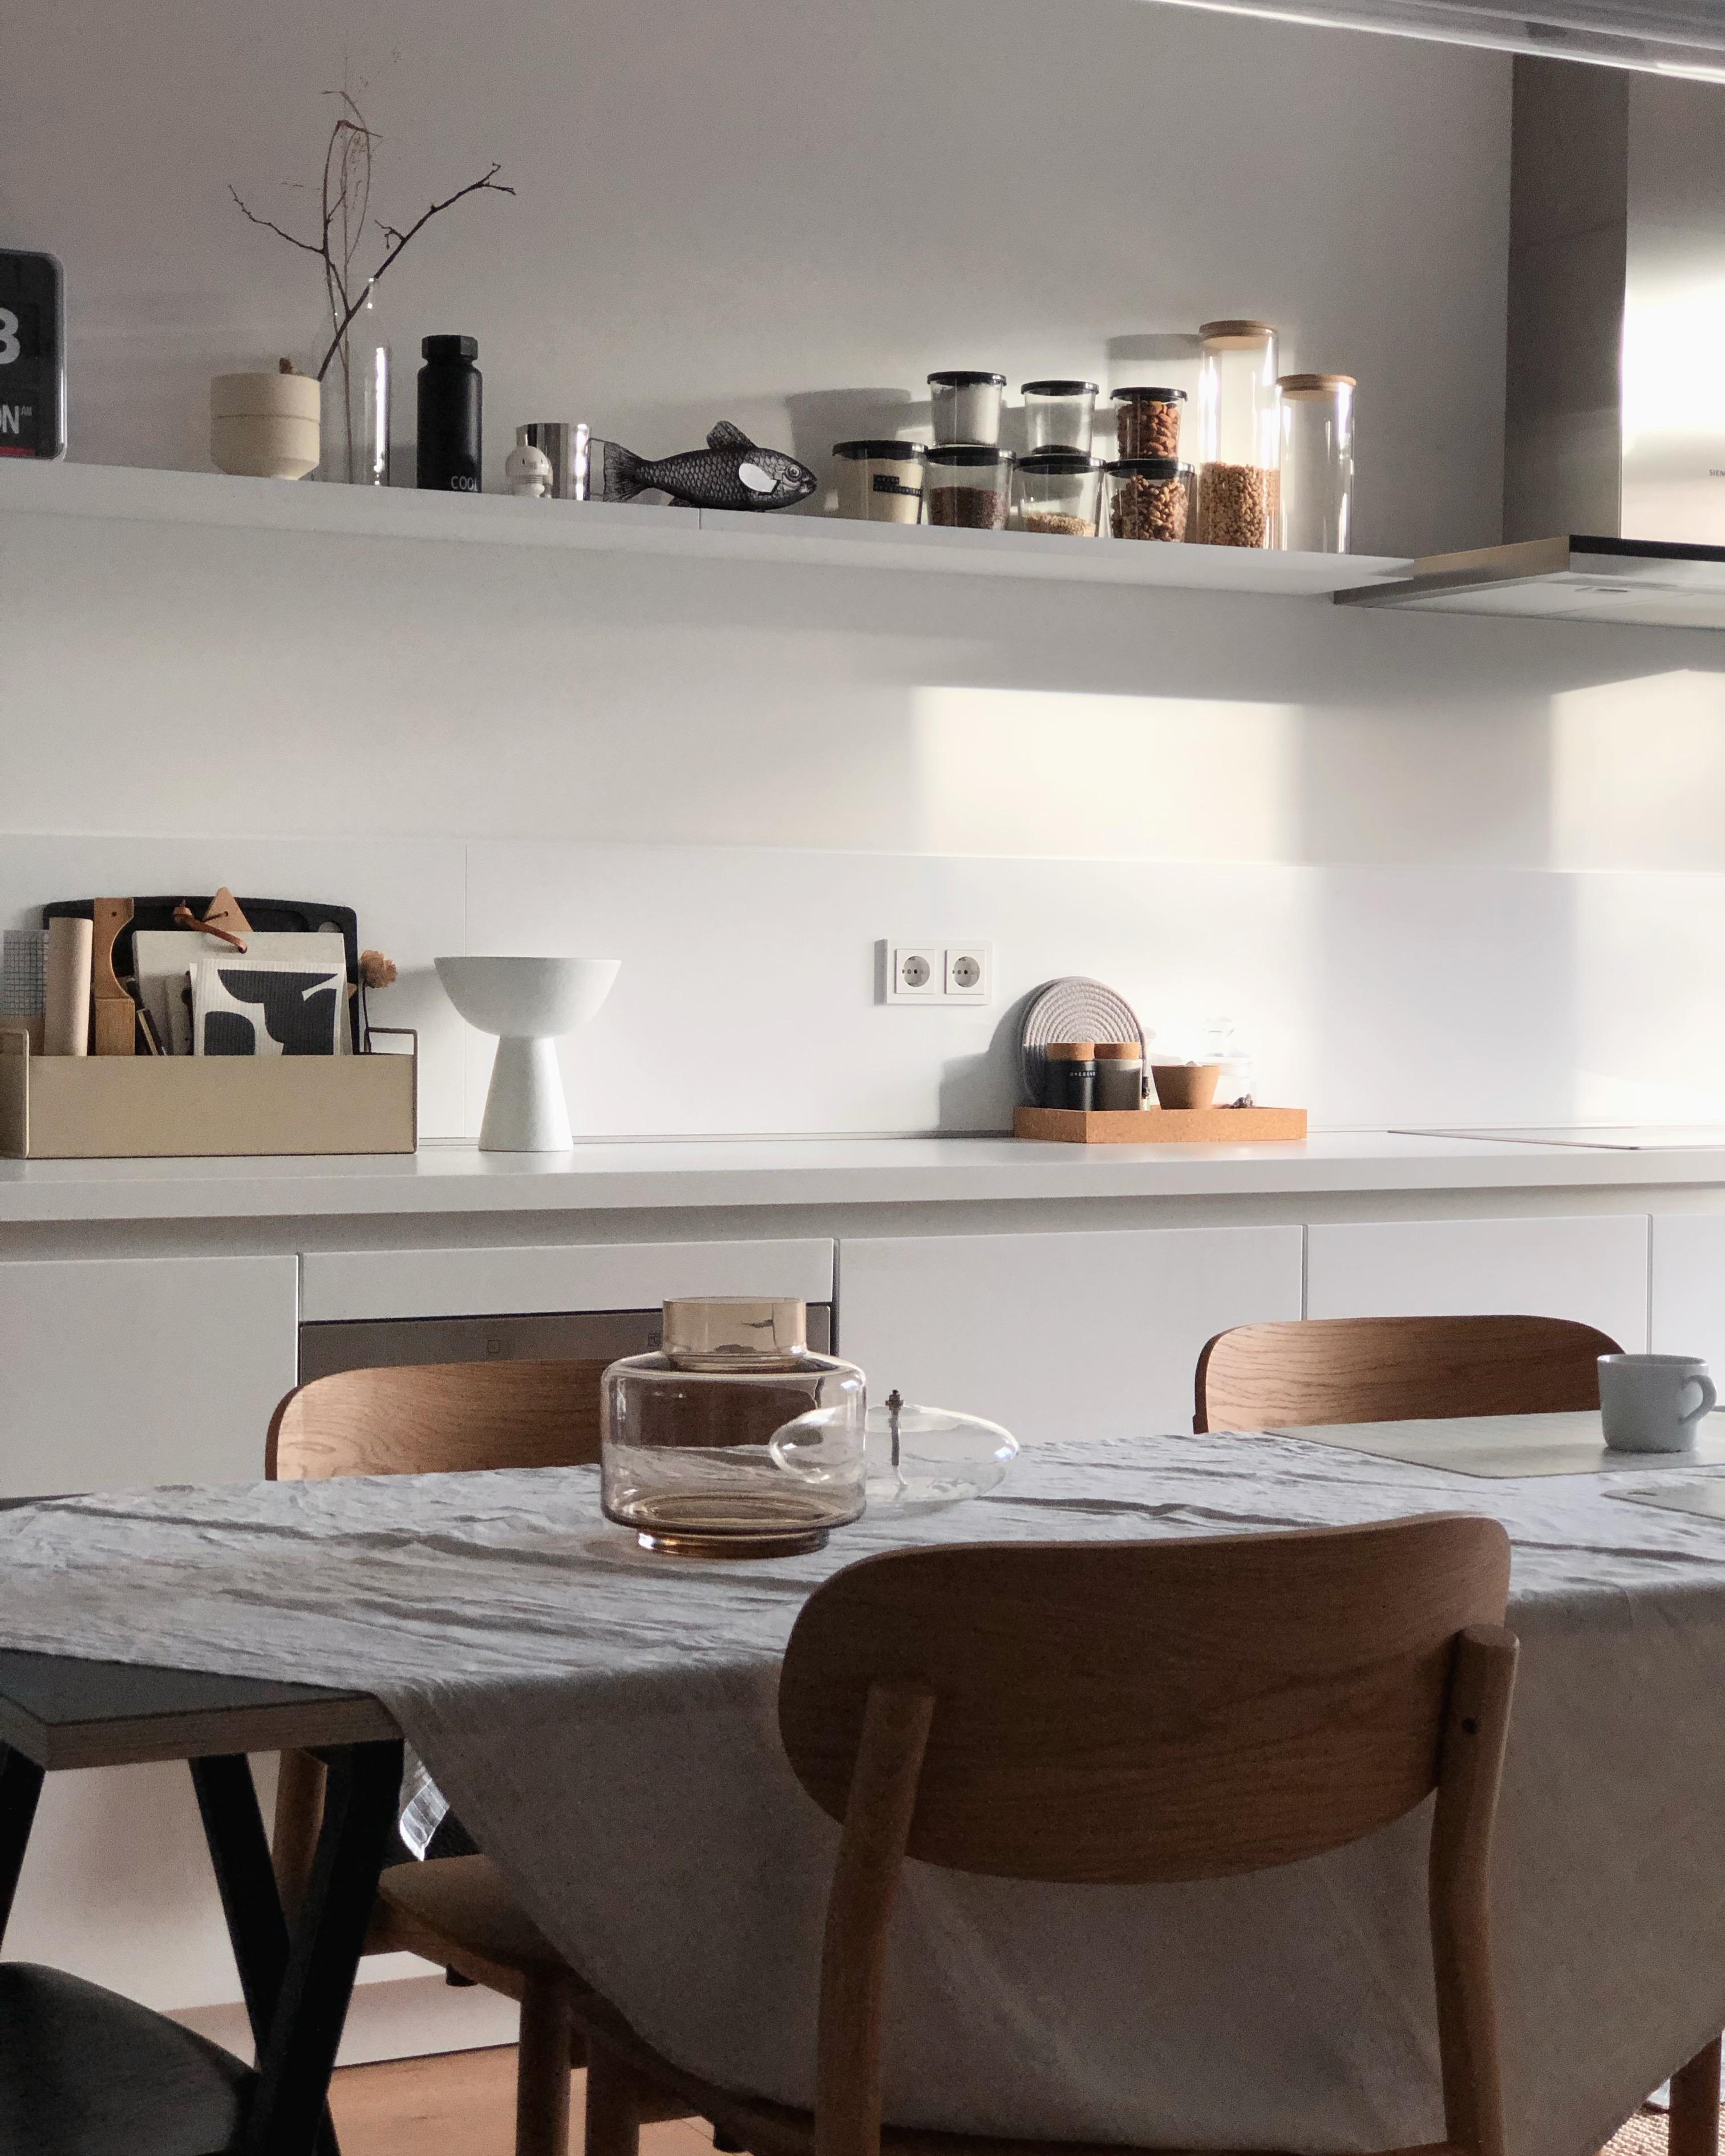 #küche #kitchen #nordic #skandi #accessoires #deko #dekoidee #regal #esstisch #couchstyle #interior #light #white 